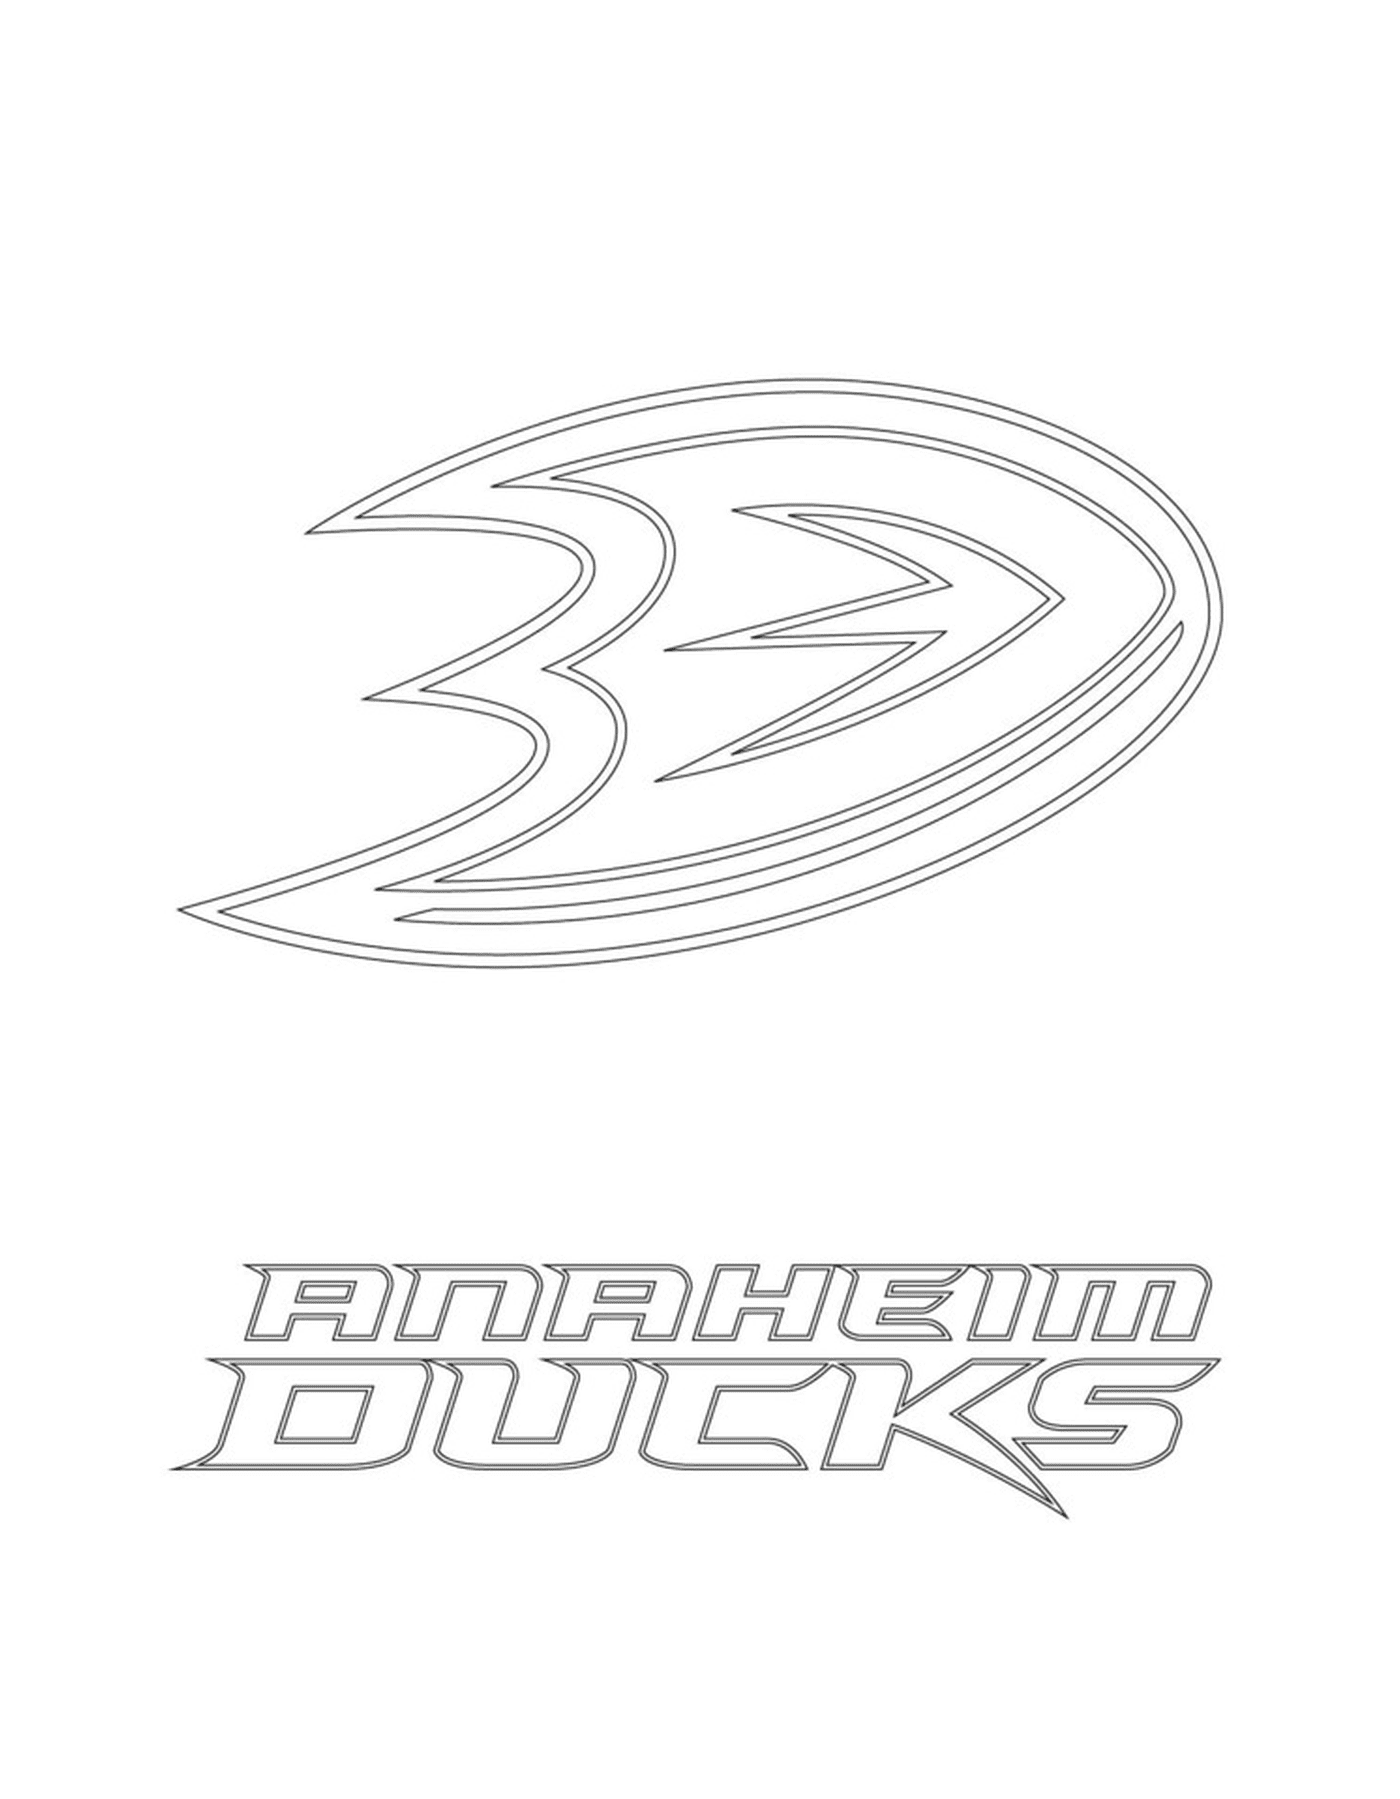  Logotipo de los Patos de Anaheim 